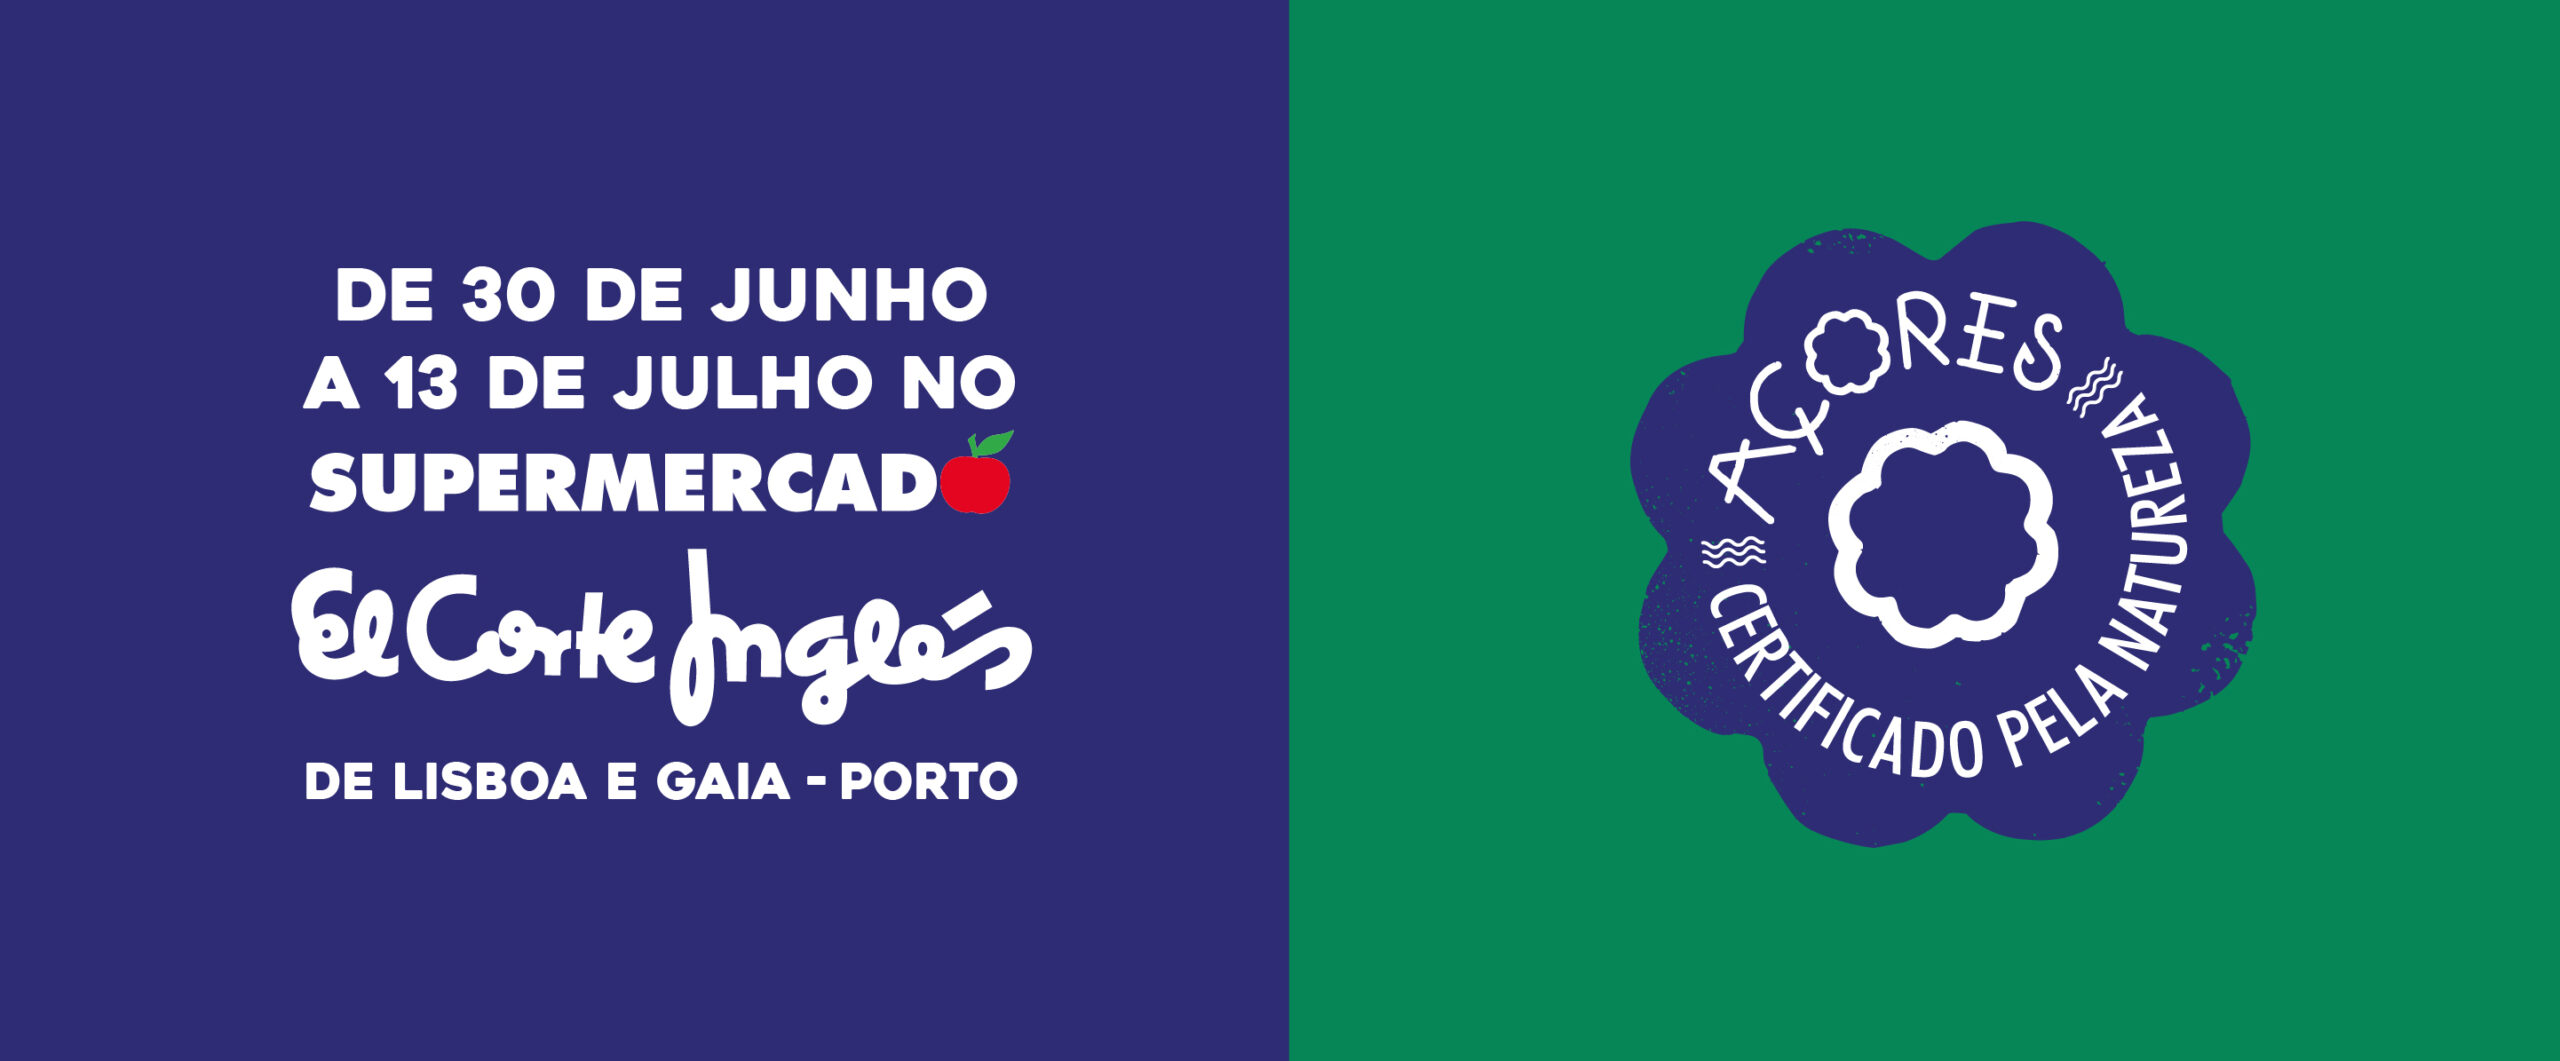 Governo dos Açores reforça parceria com os supermercados El Corte Inglés com a Campanha Açores